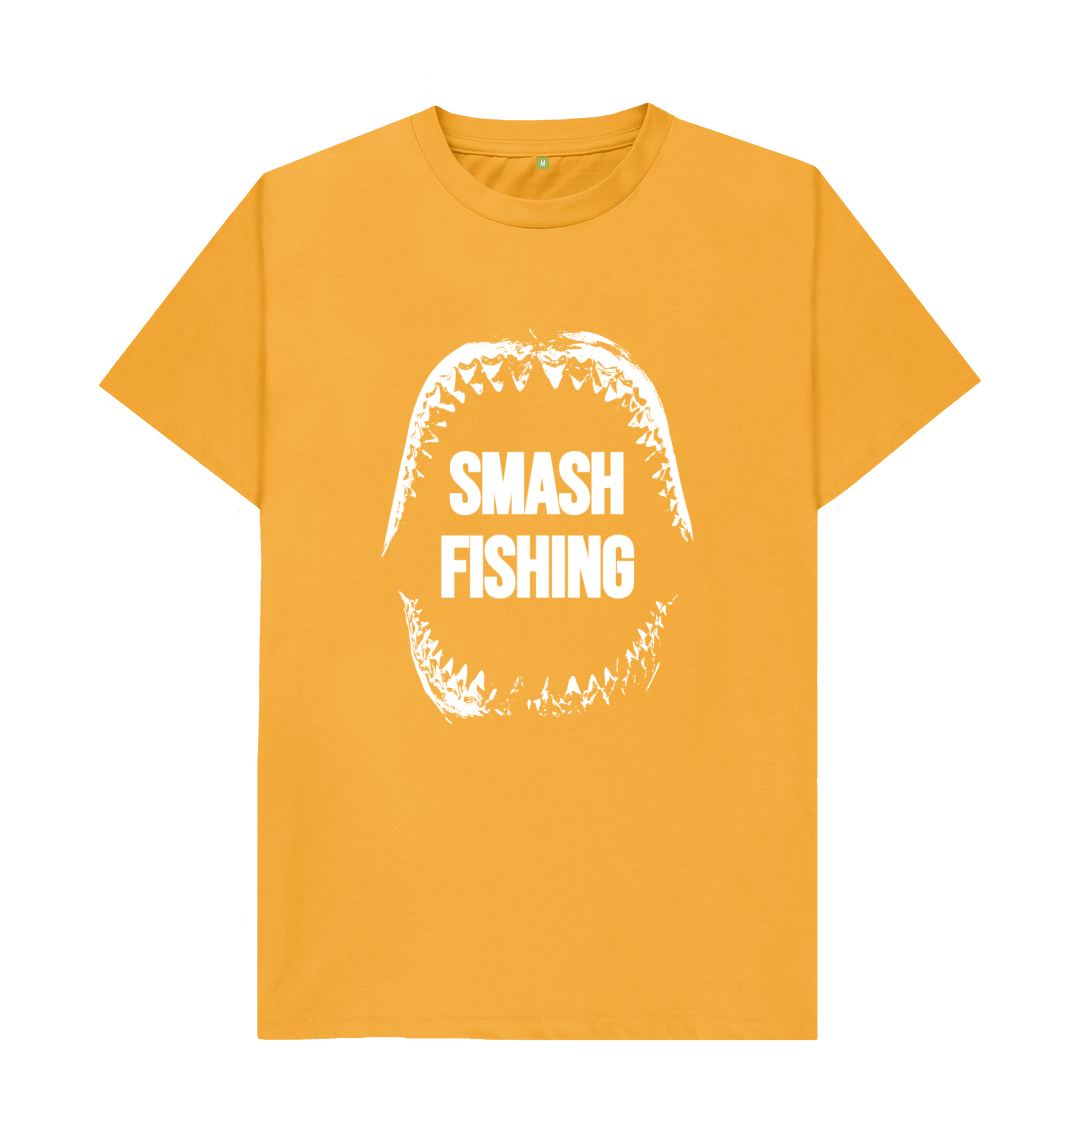 MEN'S SMASH FISHING JAWS T-SHIRT - White writing